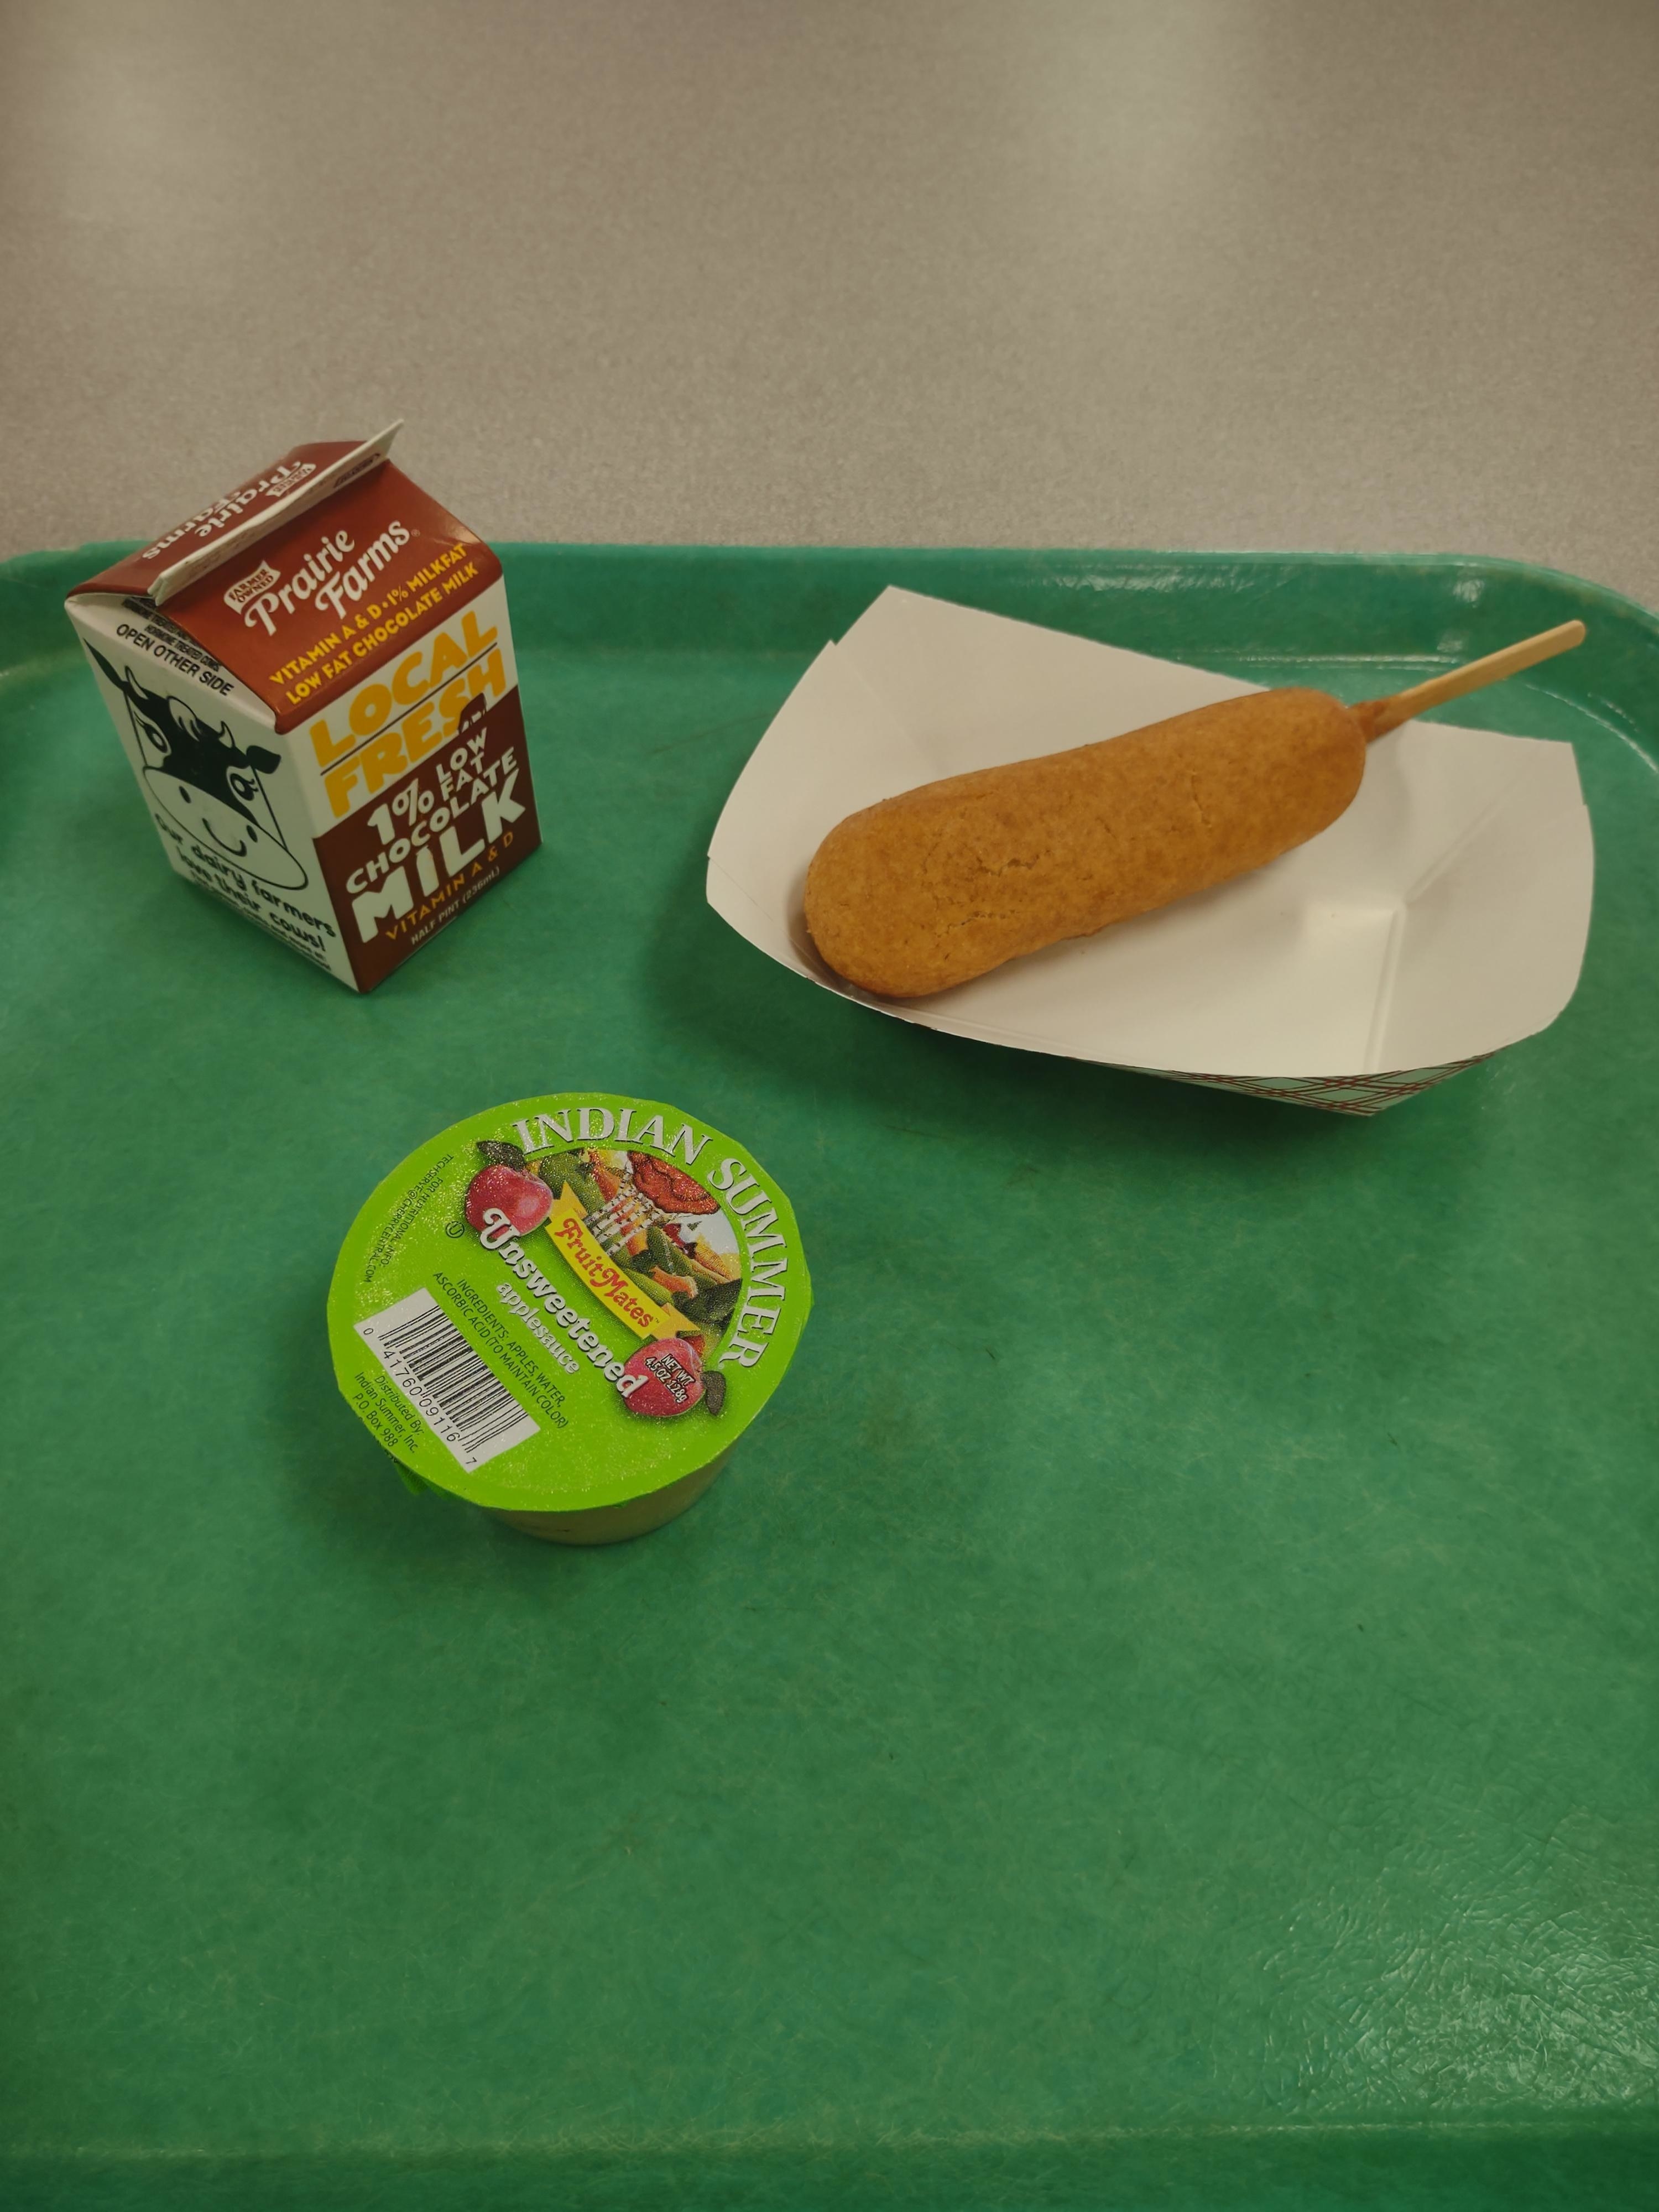 Illinois school lunch